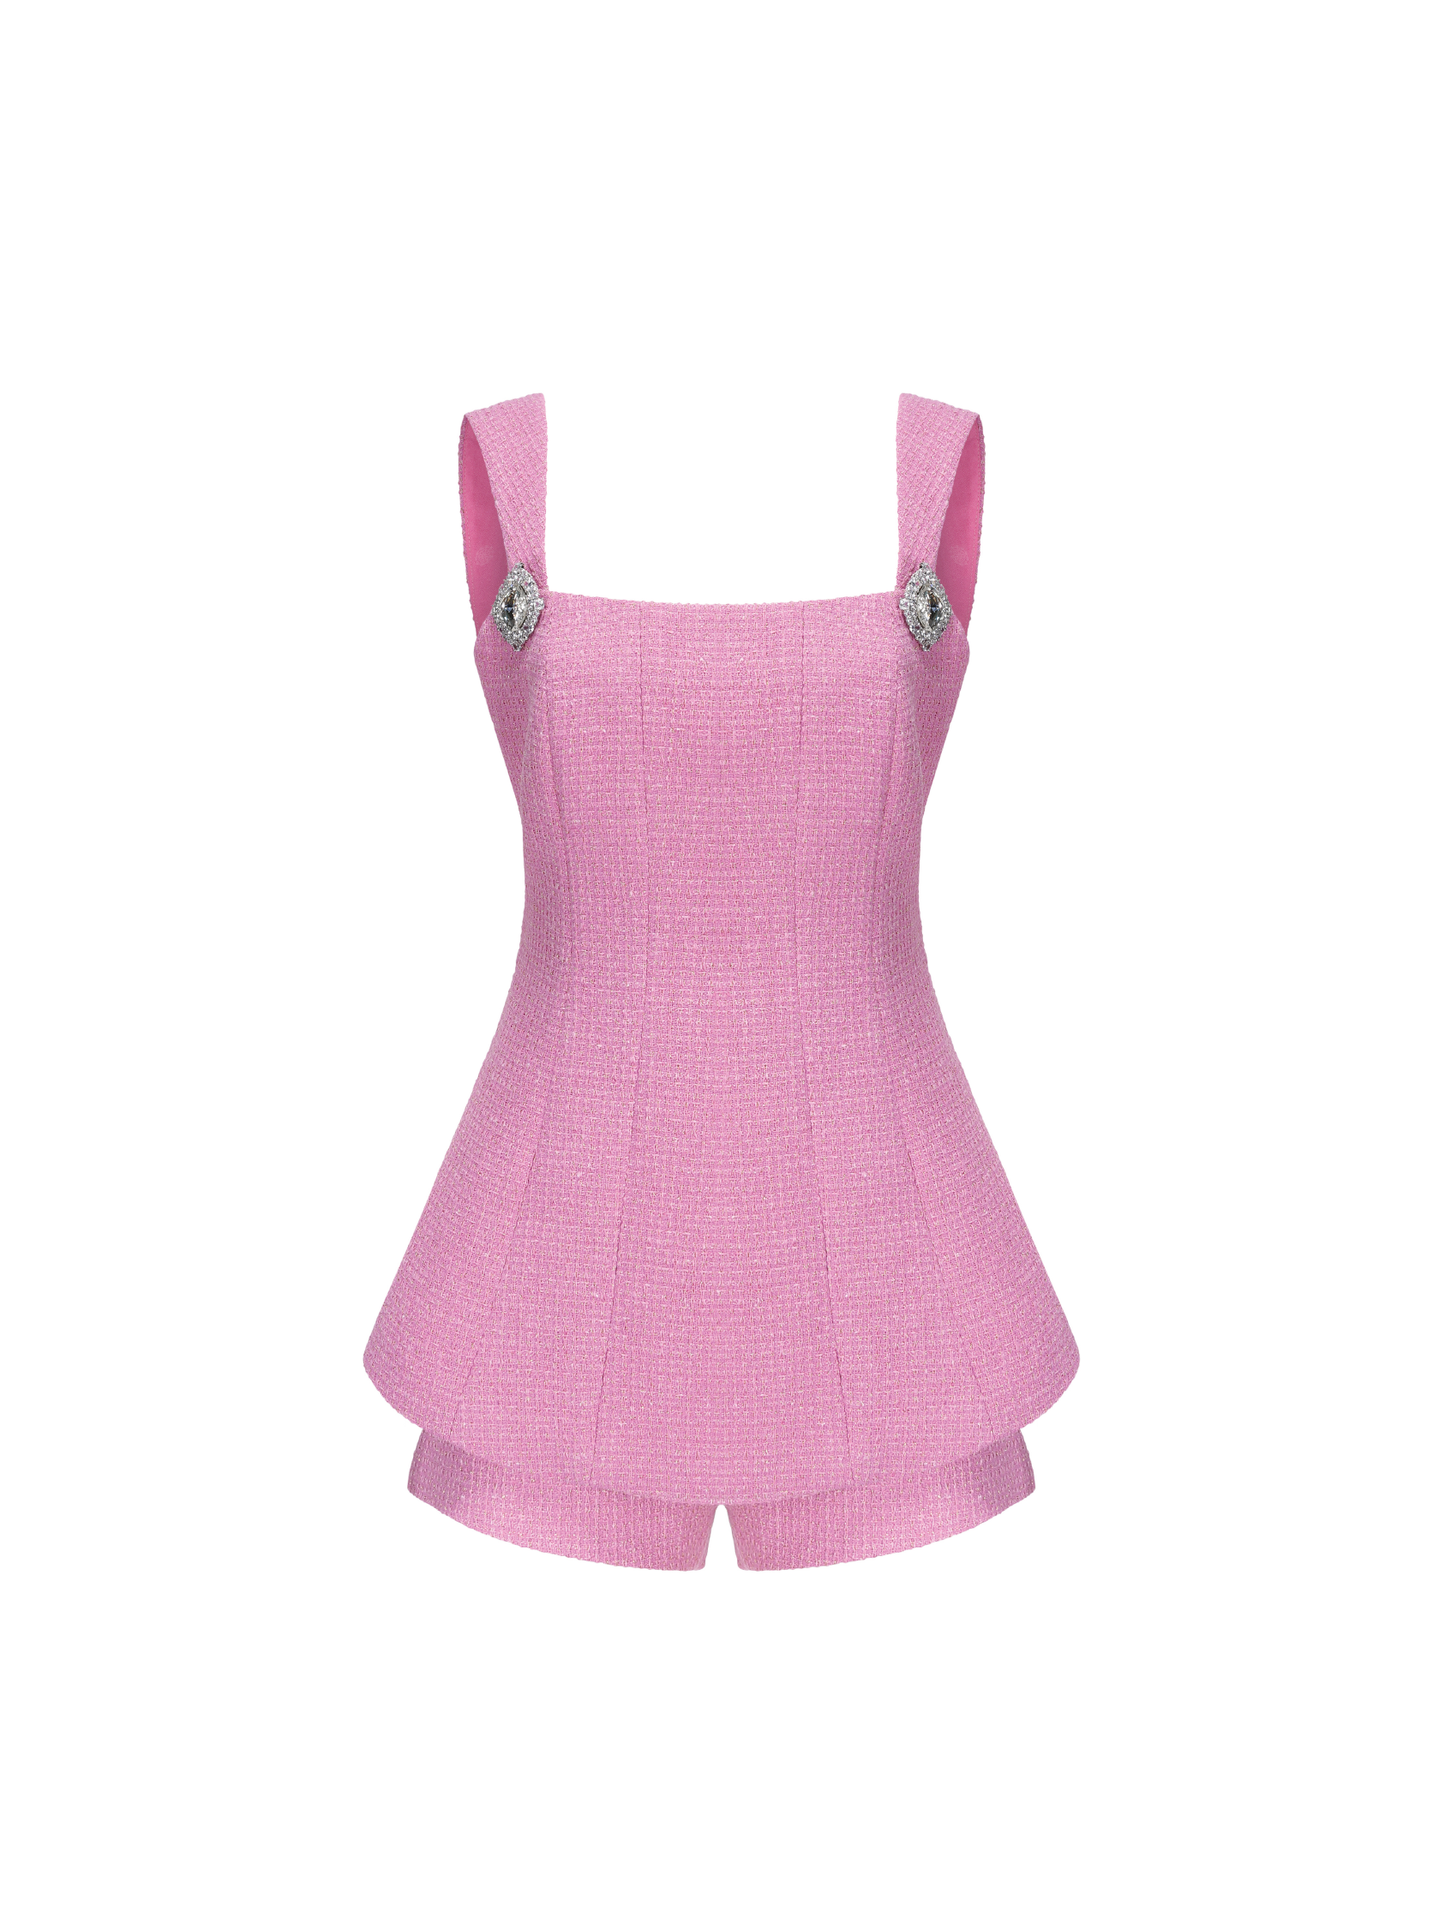 Anabella Shorts Sets (Pink)